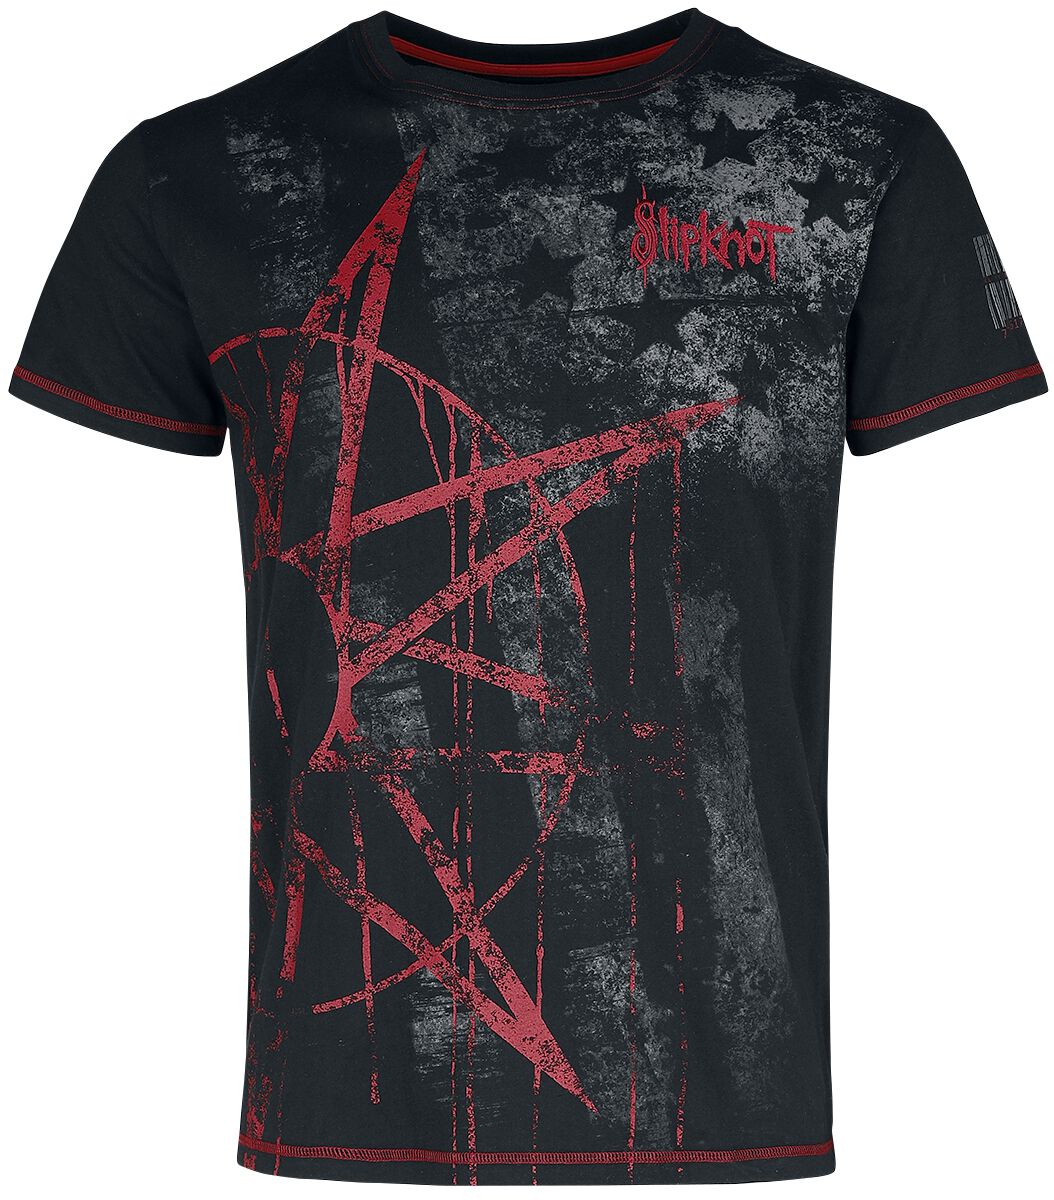 Slipknot T-Shirt - EMP Signature Collection - S bis 5XL - für Männer - Größe 4XL - schwarz  - EMP exklusives Merchandise!